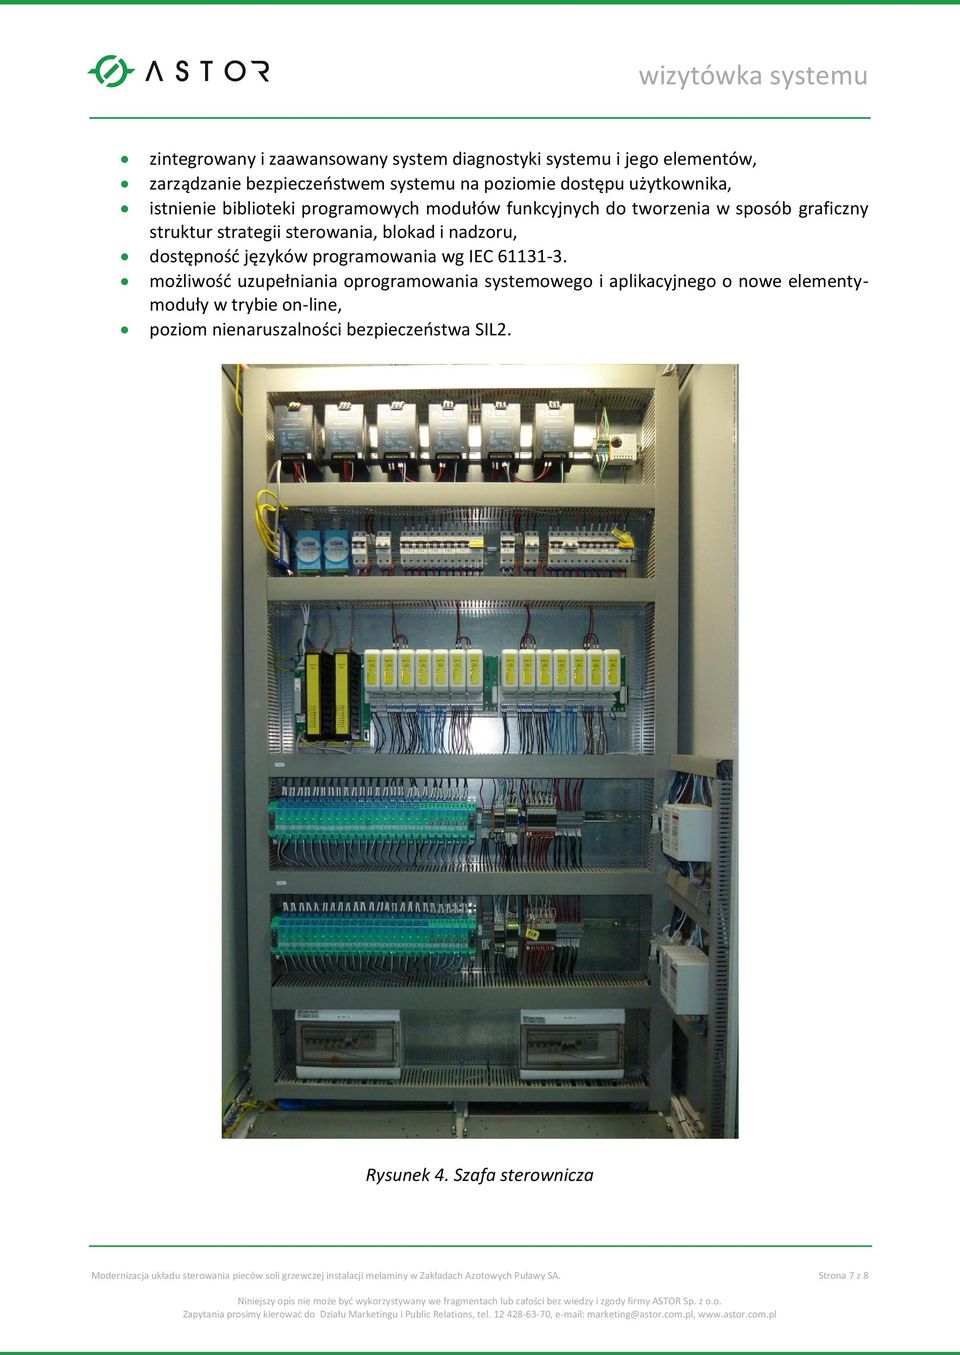 programowania wg IEC 61131-3.